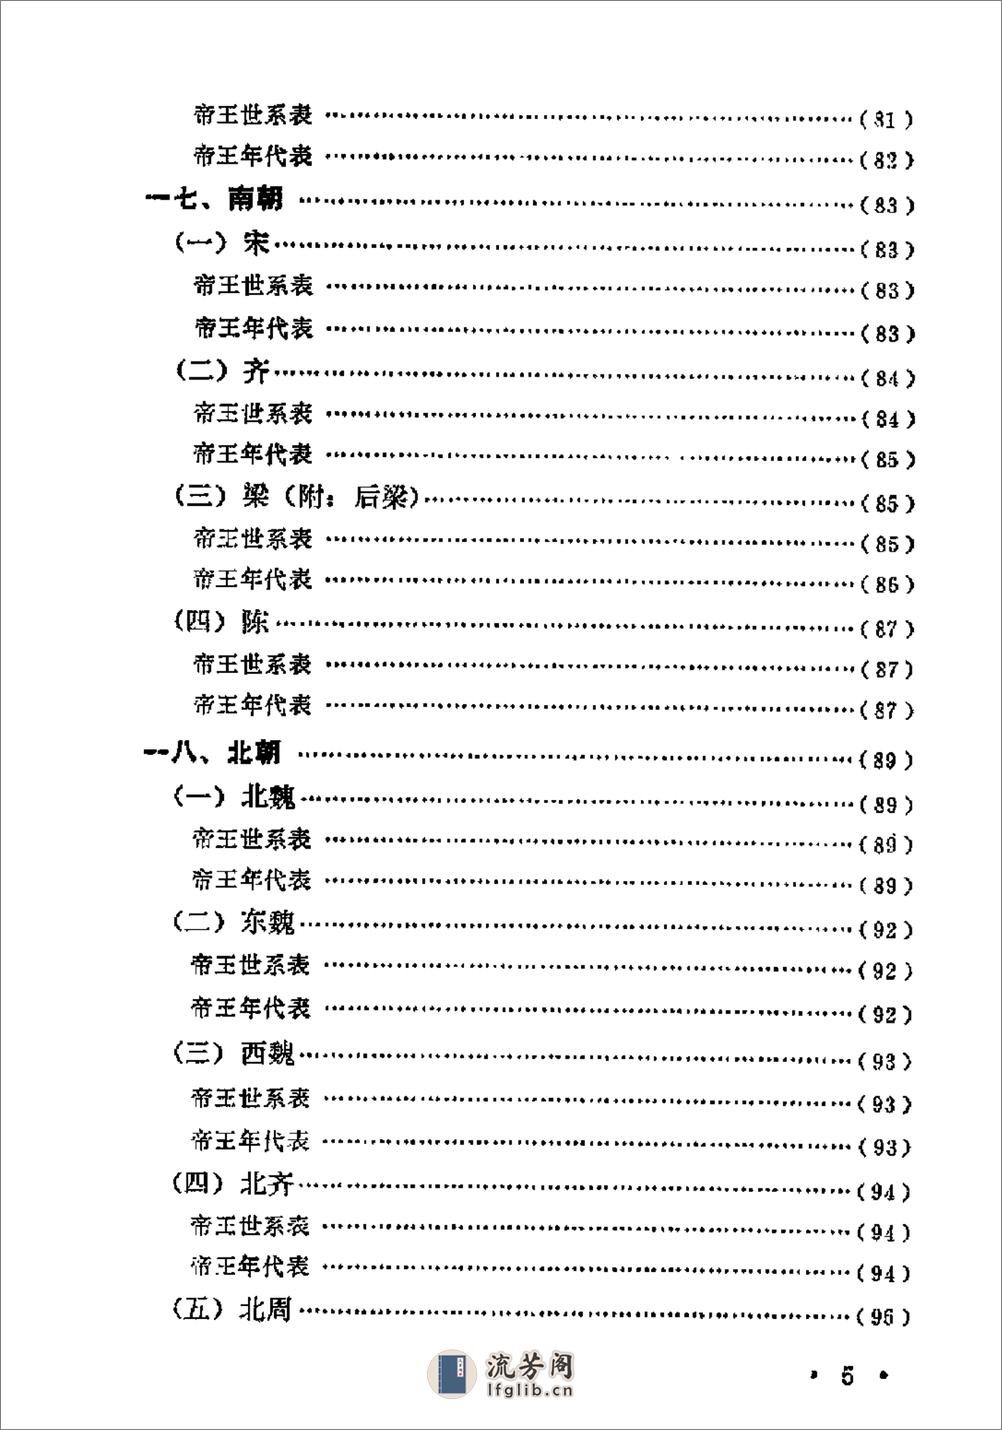 中国历史纪年简表·陈作良·中央党校1985 - 第8页预览图